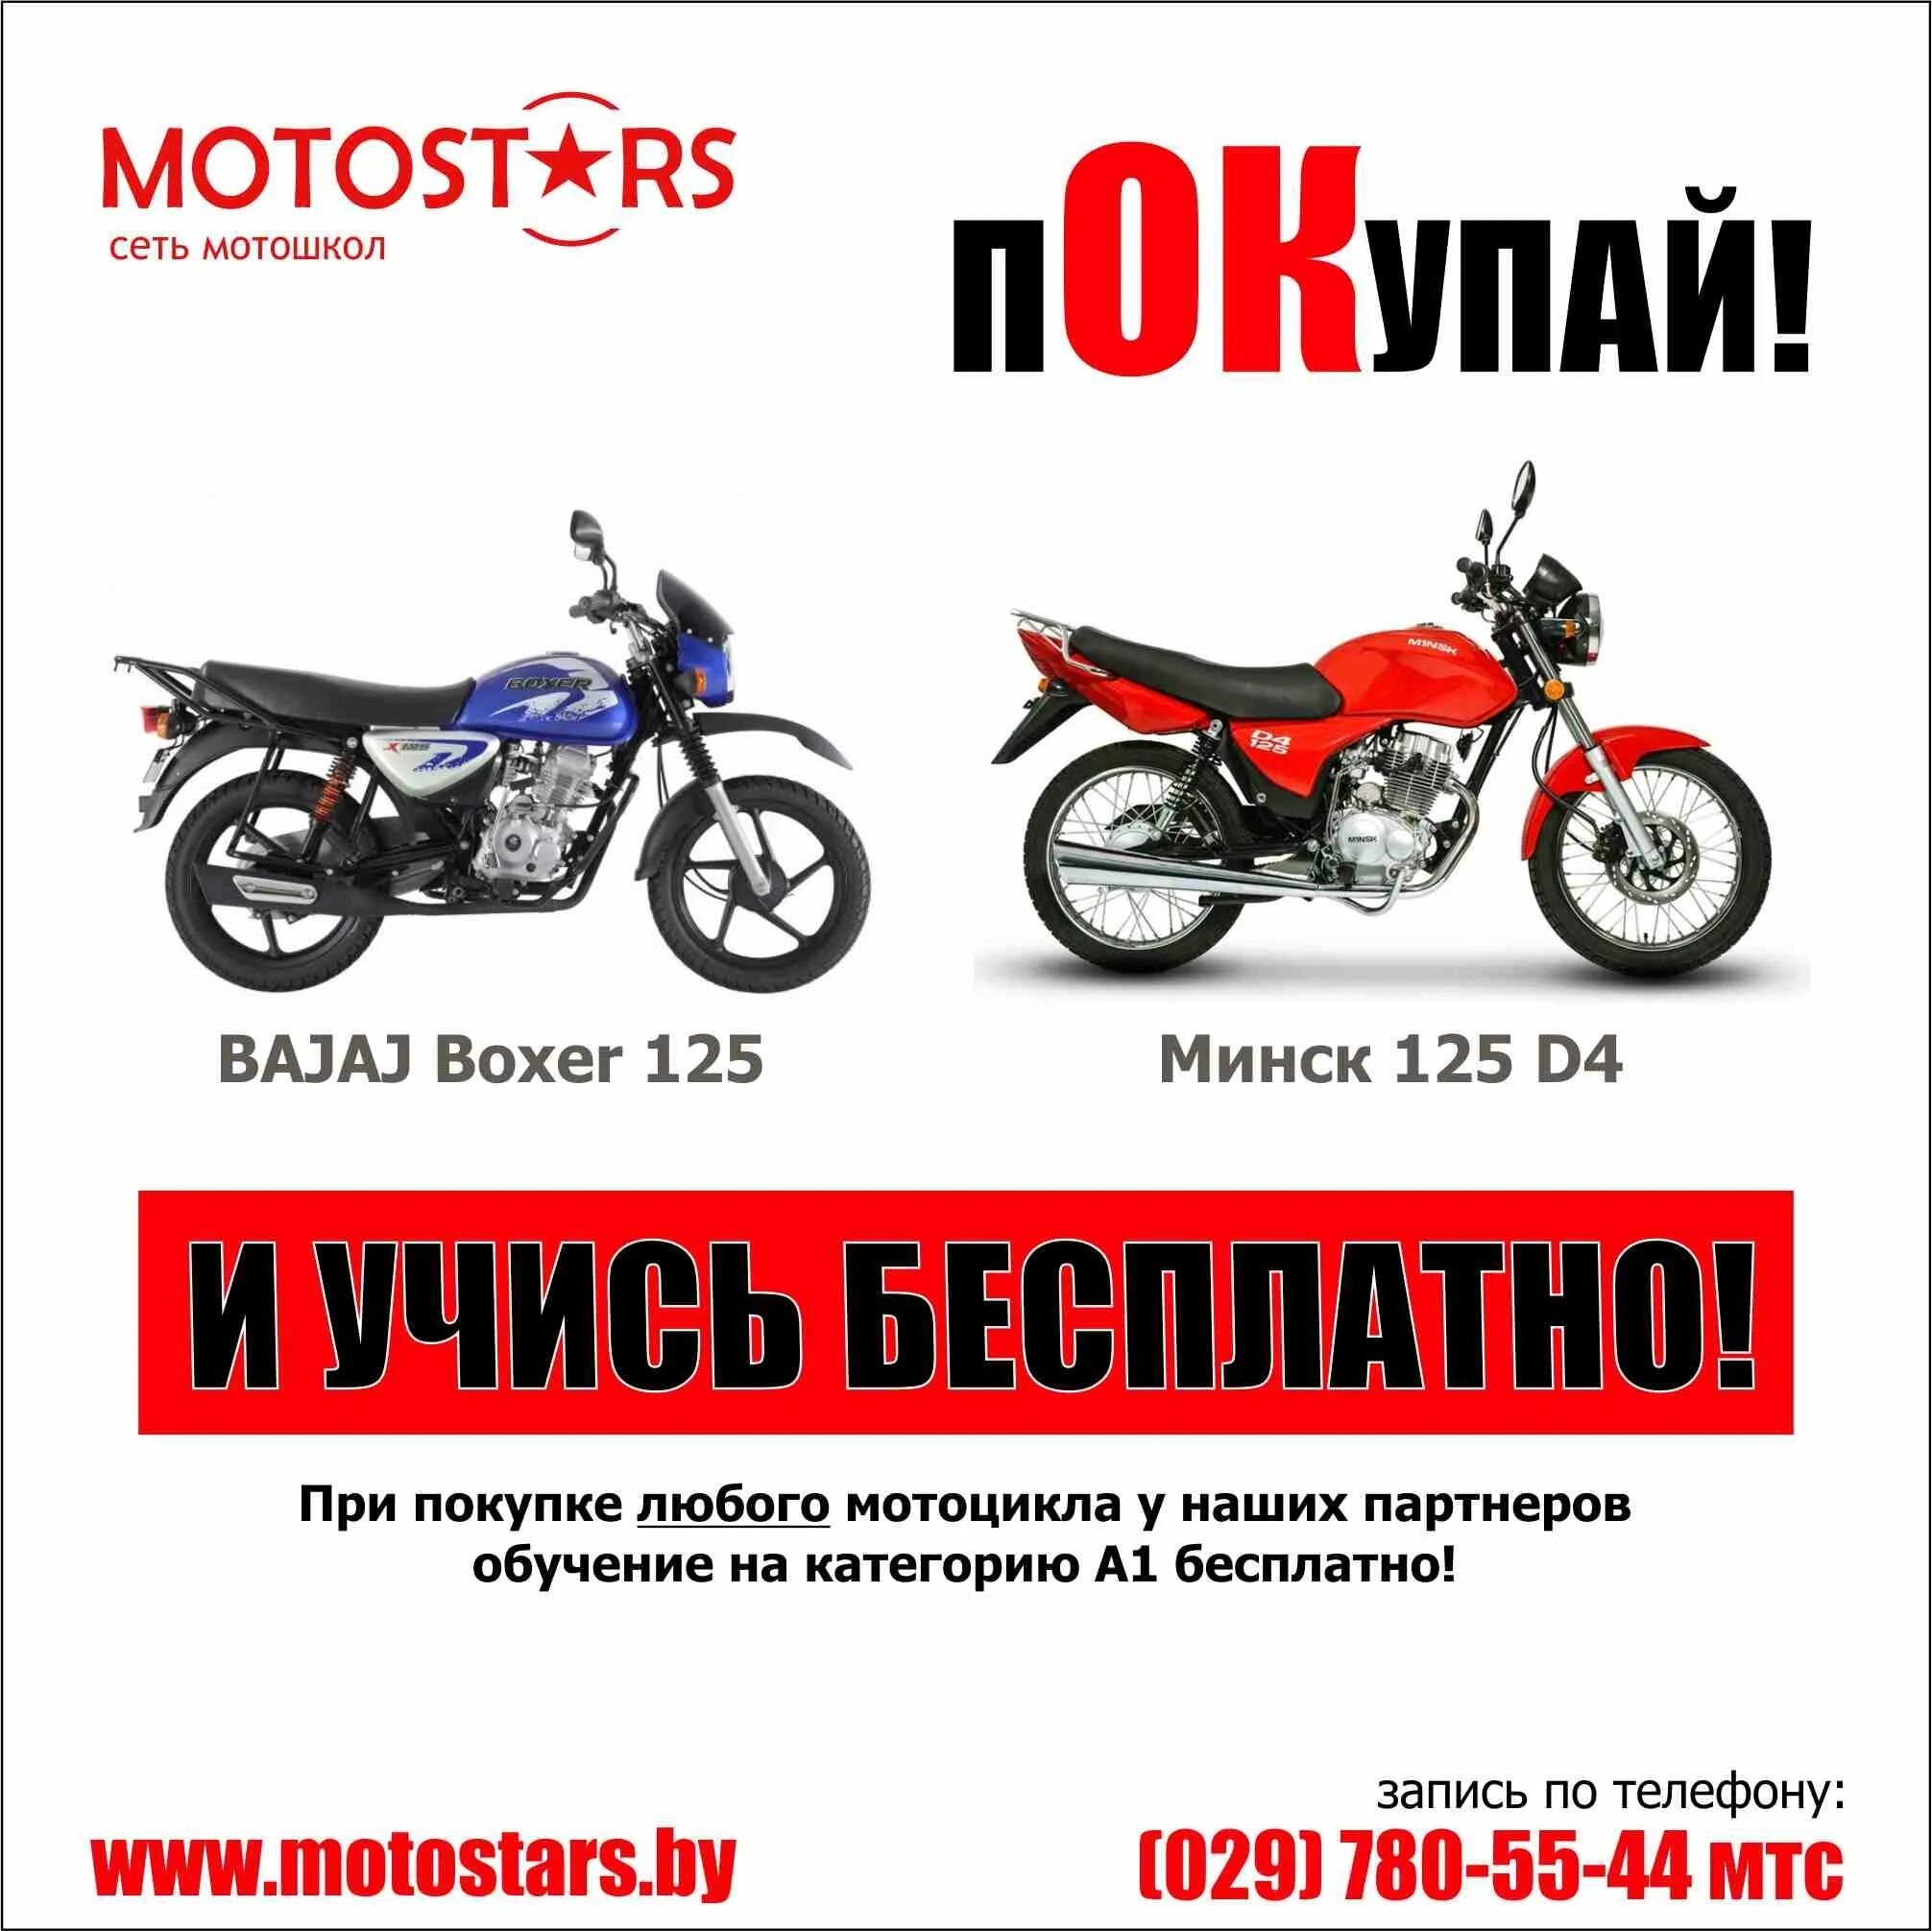 Категории мотоциклов. Мототехника категории м. Мото категории а1. Мопеды категории м.